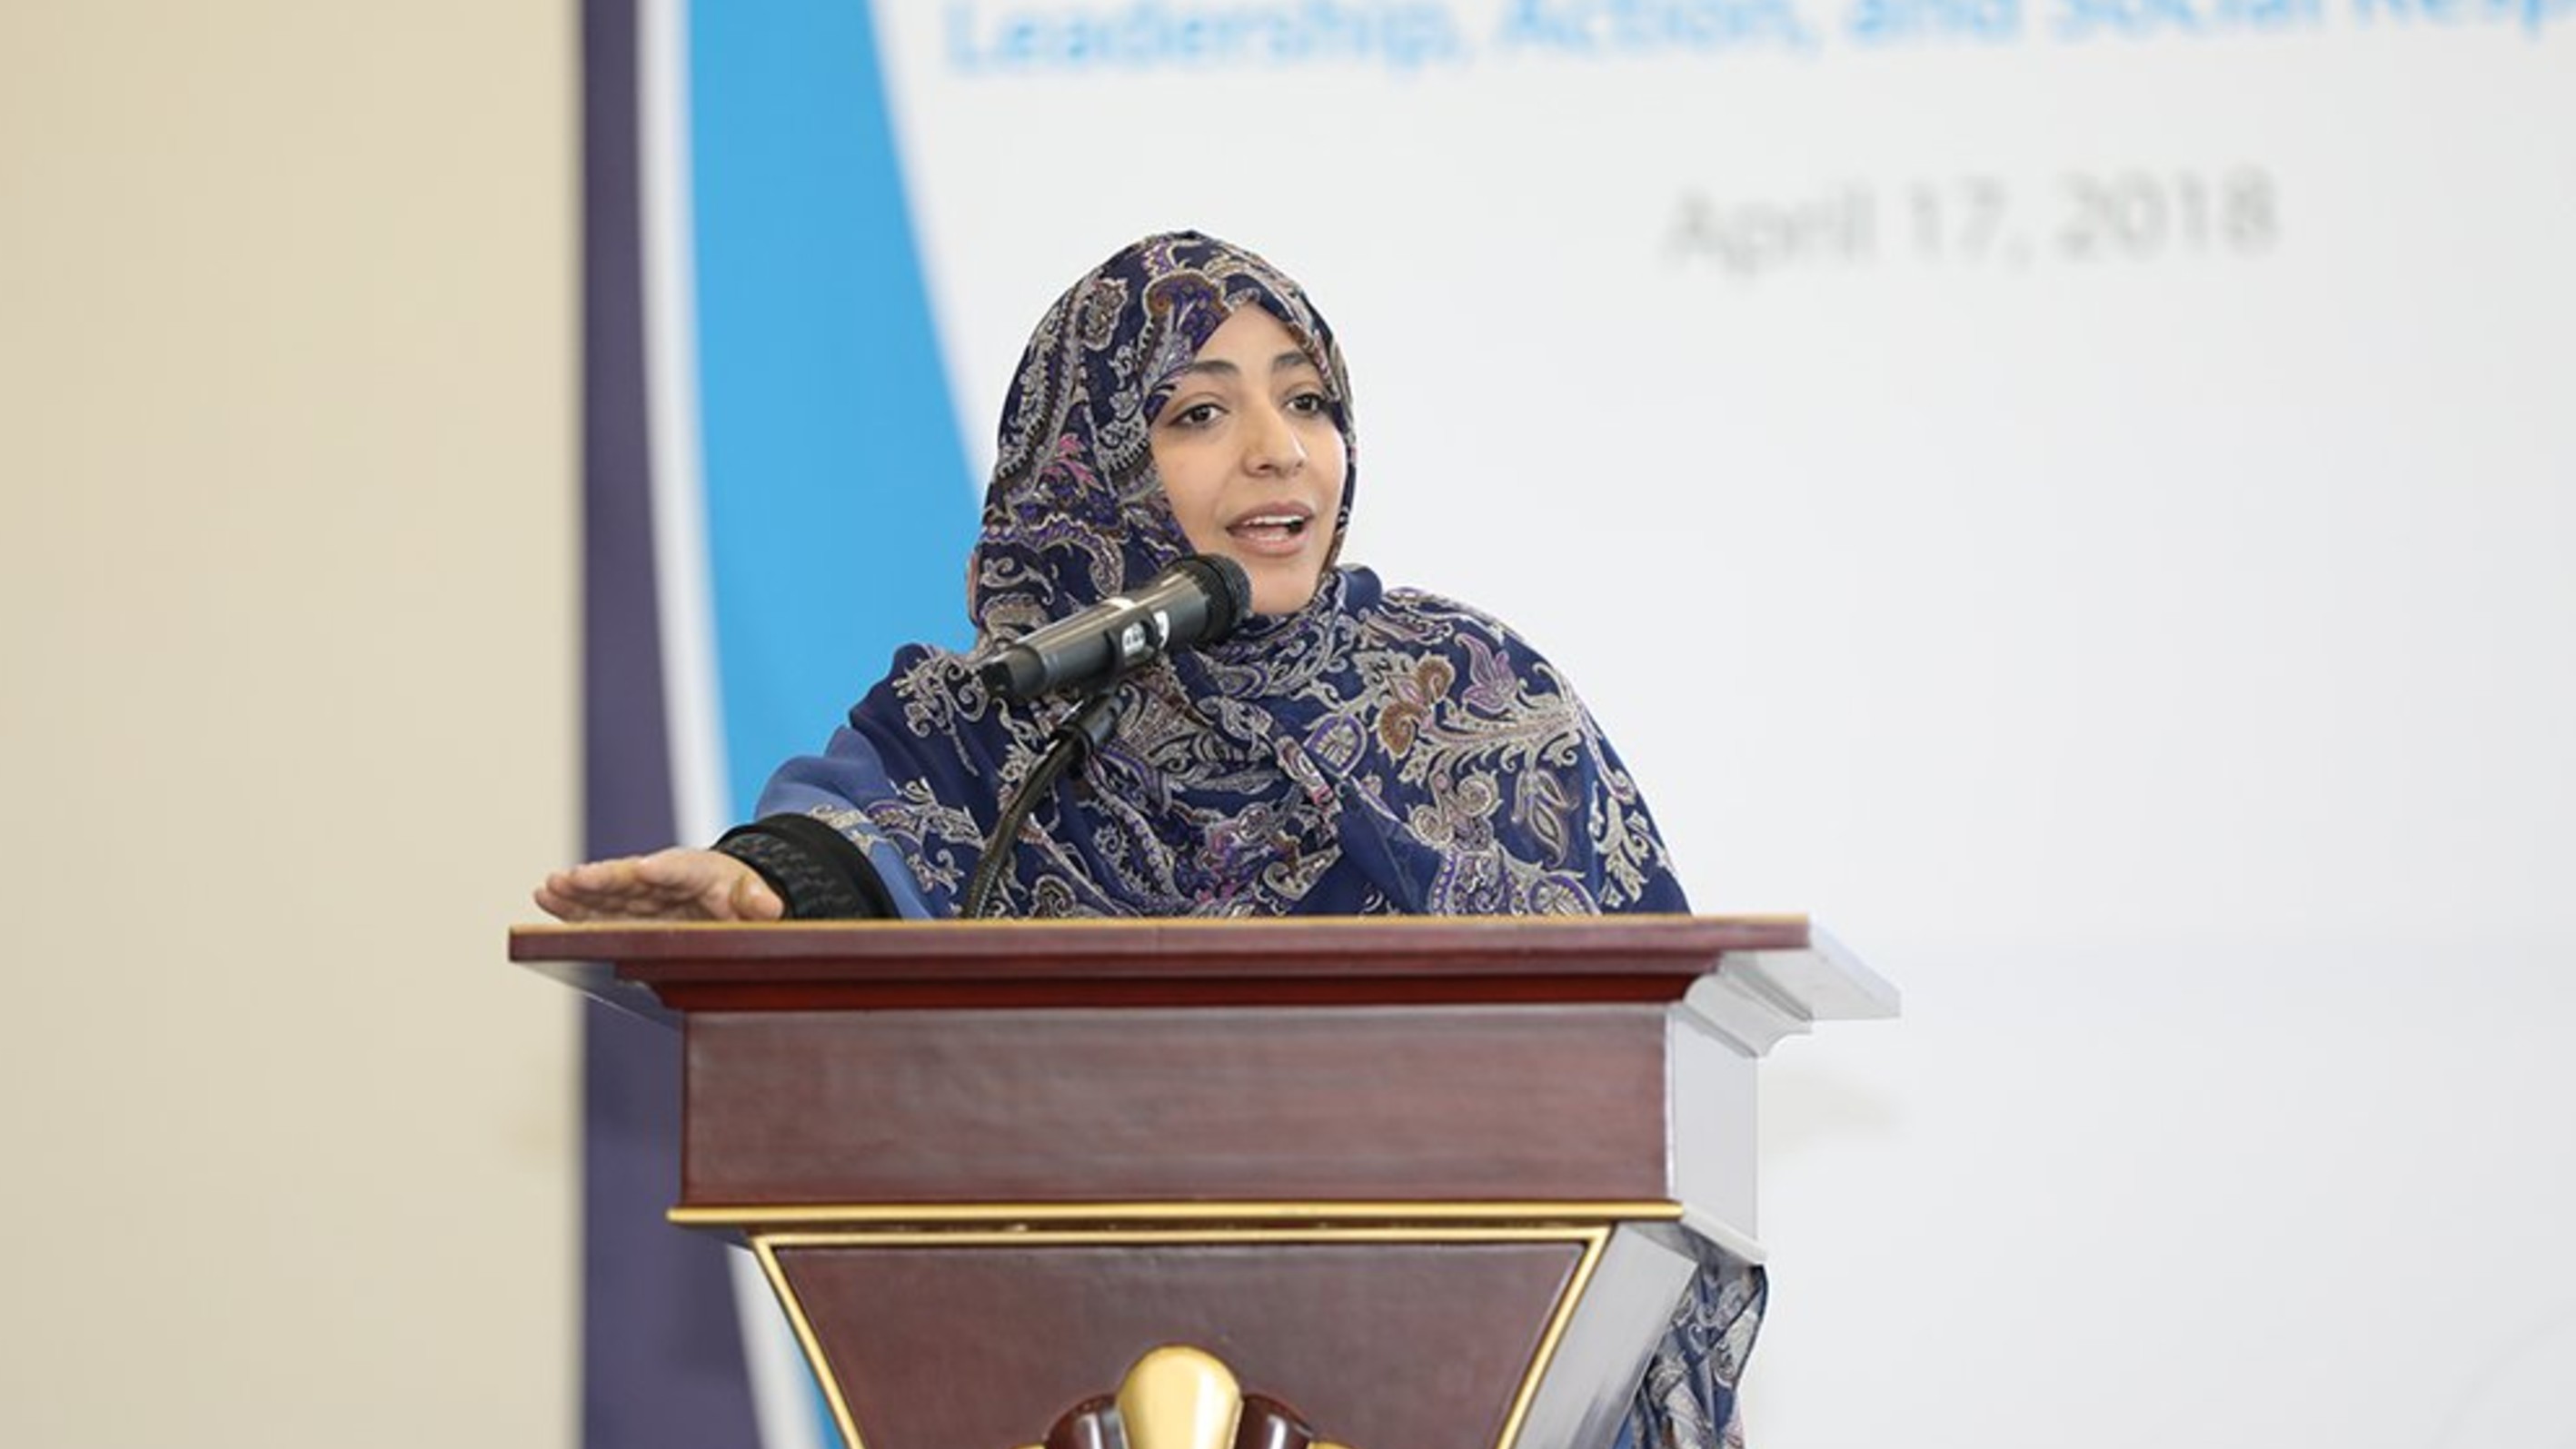 كلمة الناشطة الحائزة على جائزة نوبل للسلام توكل كرمان خلال الملتقى السنوي الثالث للتعلم والمشاركة المجتمعية في كلية المجتمع - قطر